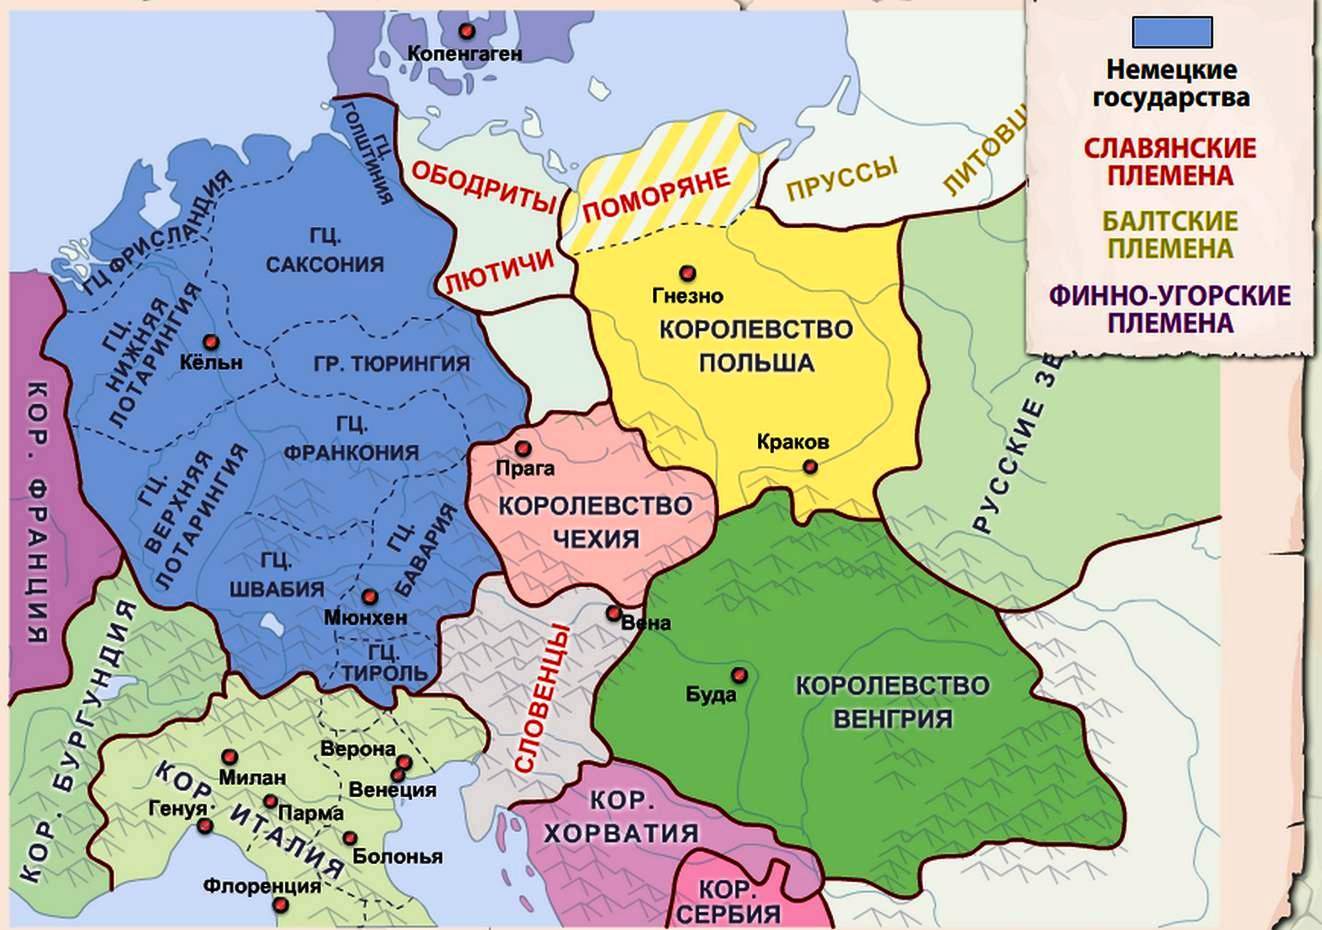 Германия 9 век. Территория полишм в 11 веке. Территория Германии в 11-13 веках. Славянские земли в Германии. Германское королевство средние века.